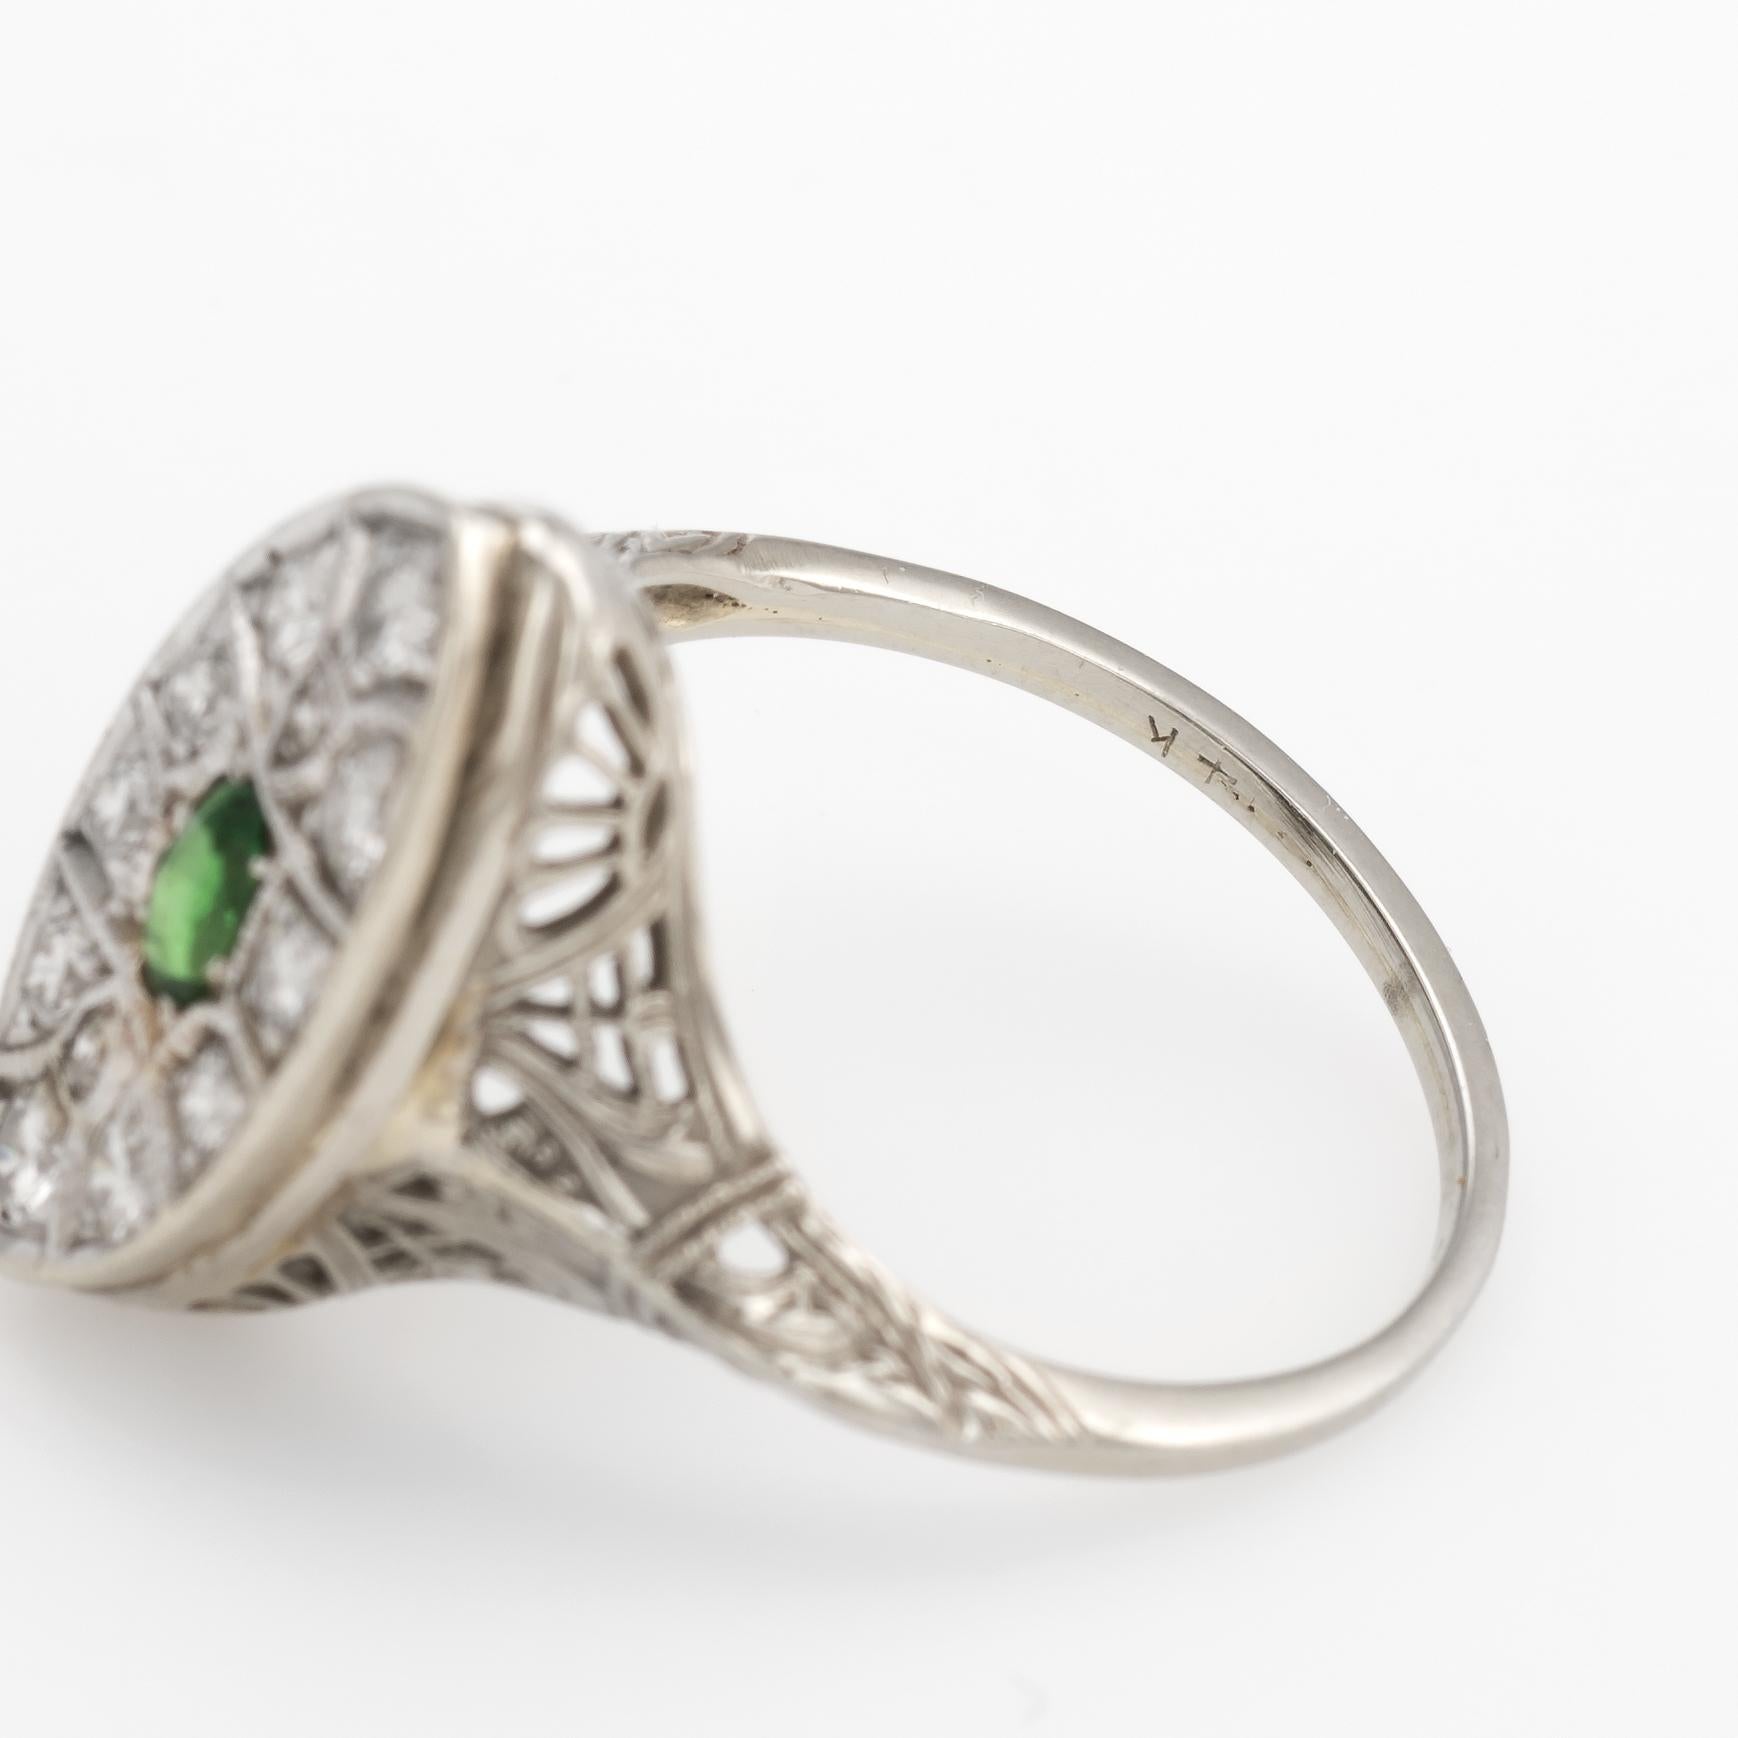 Vintage Art Deco Diamond Ring Navette Emerald 14k White Gold Filigree 2